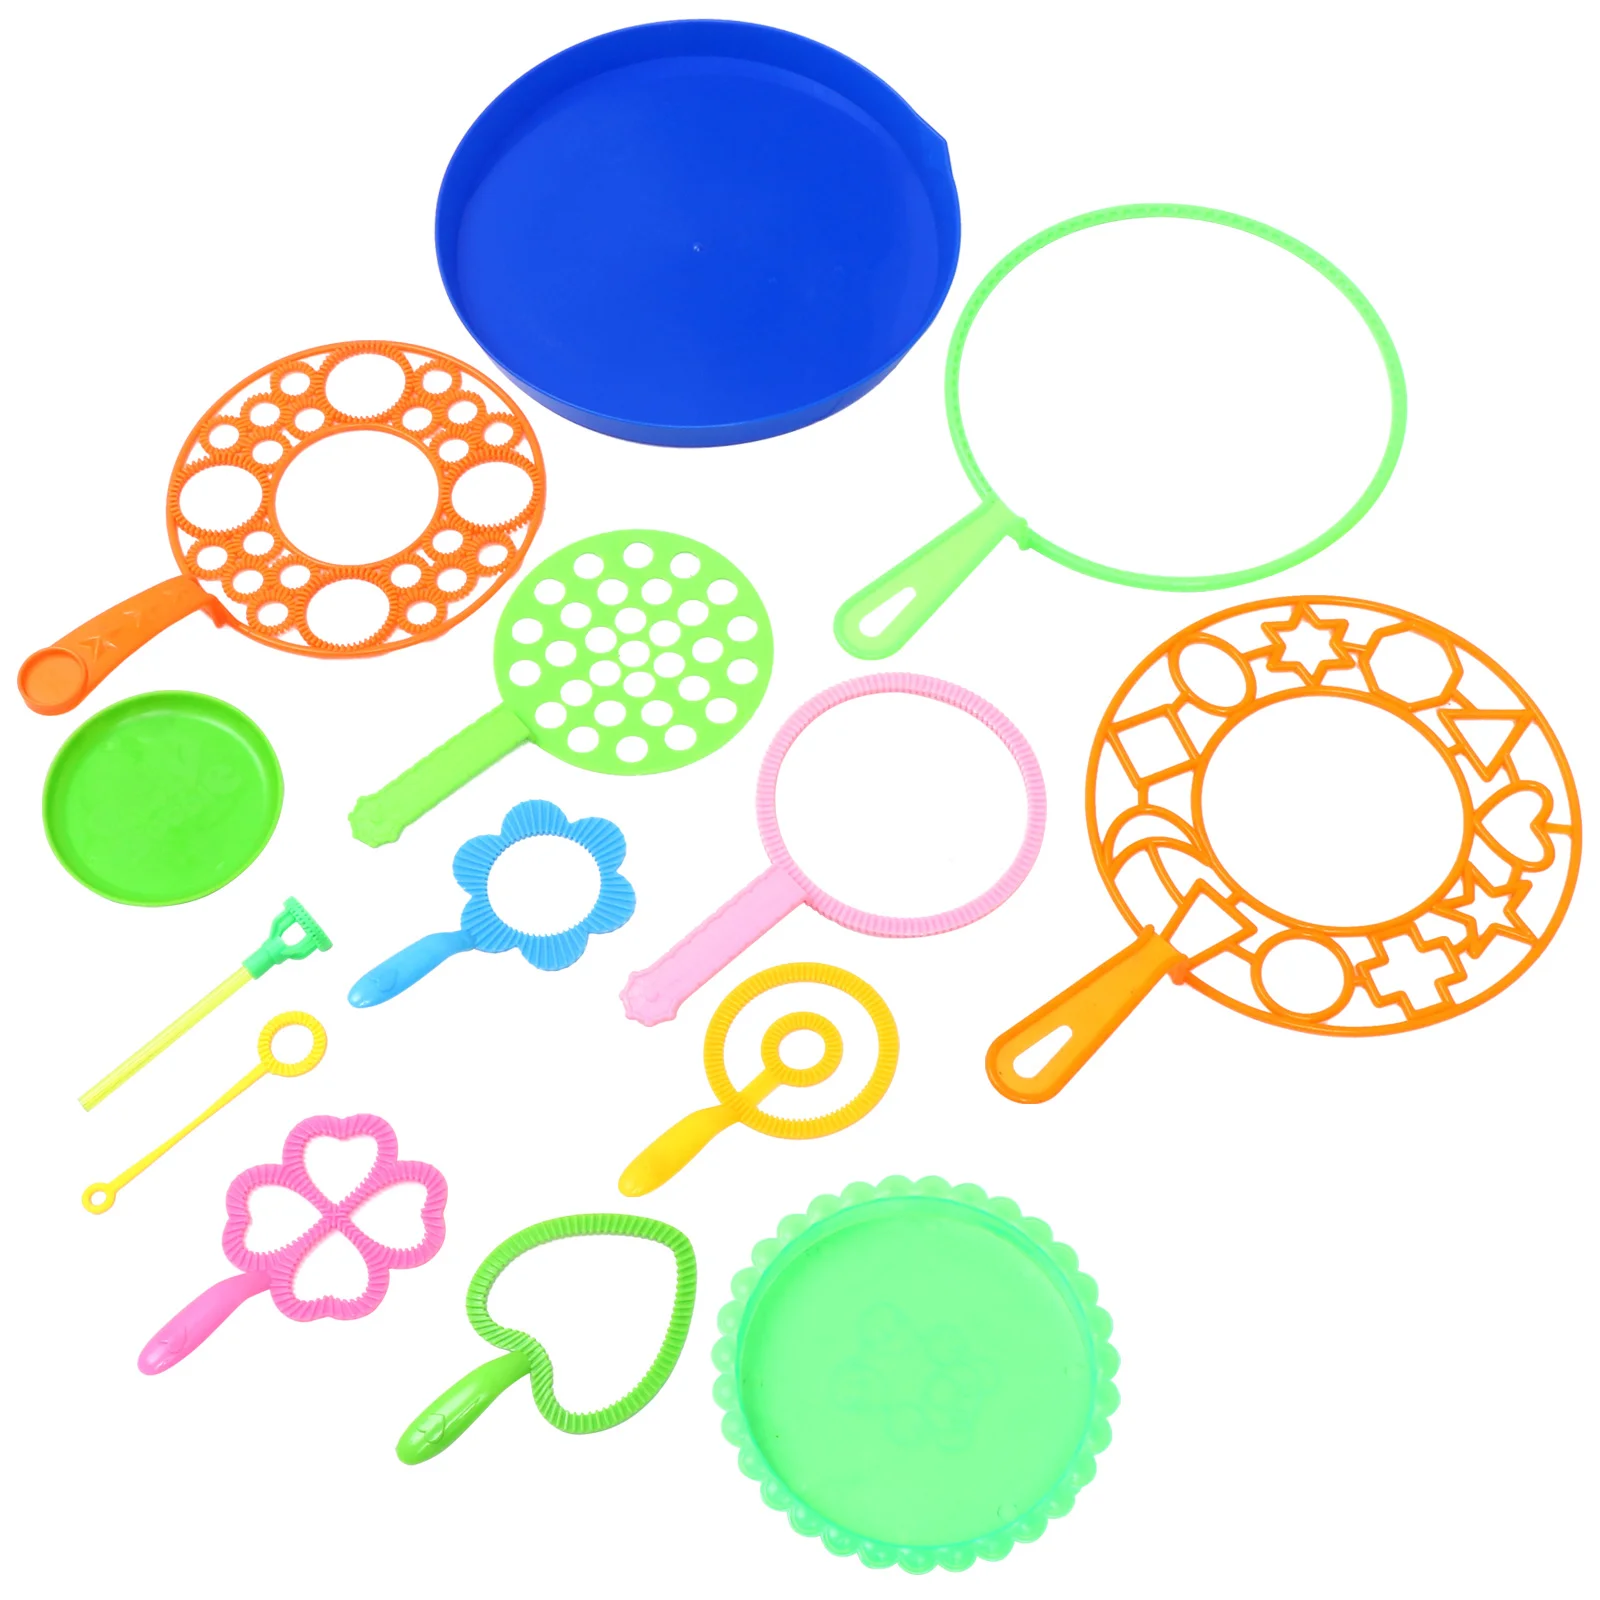 

Воздуходувка с пузырьками, создание игрушек, удобство для использования вне помещений, огромные разноцветные палочки, подарок, выдувание